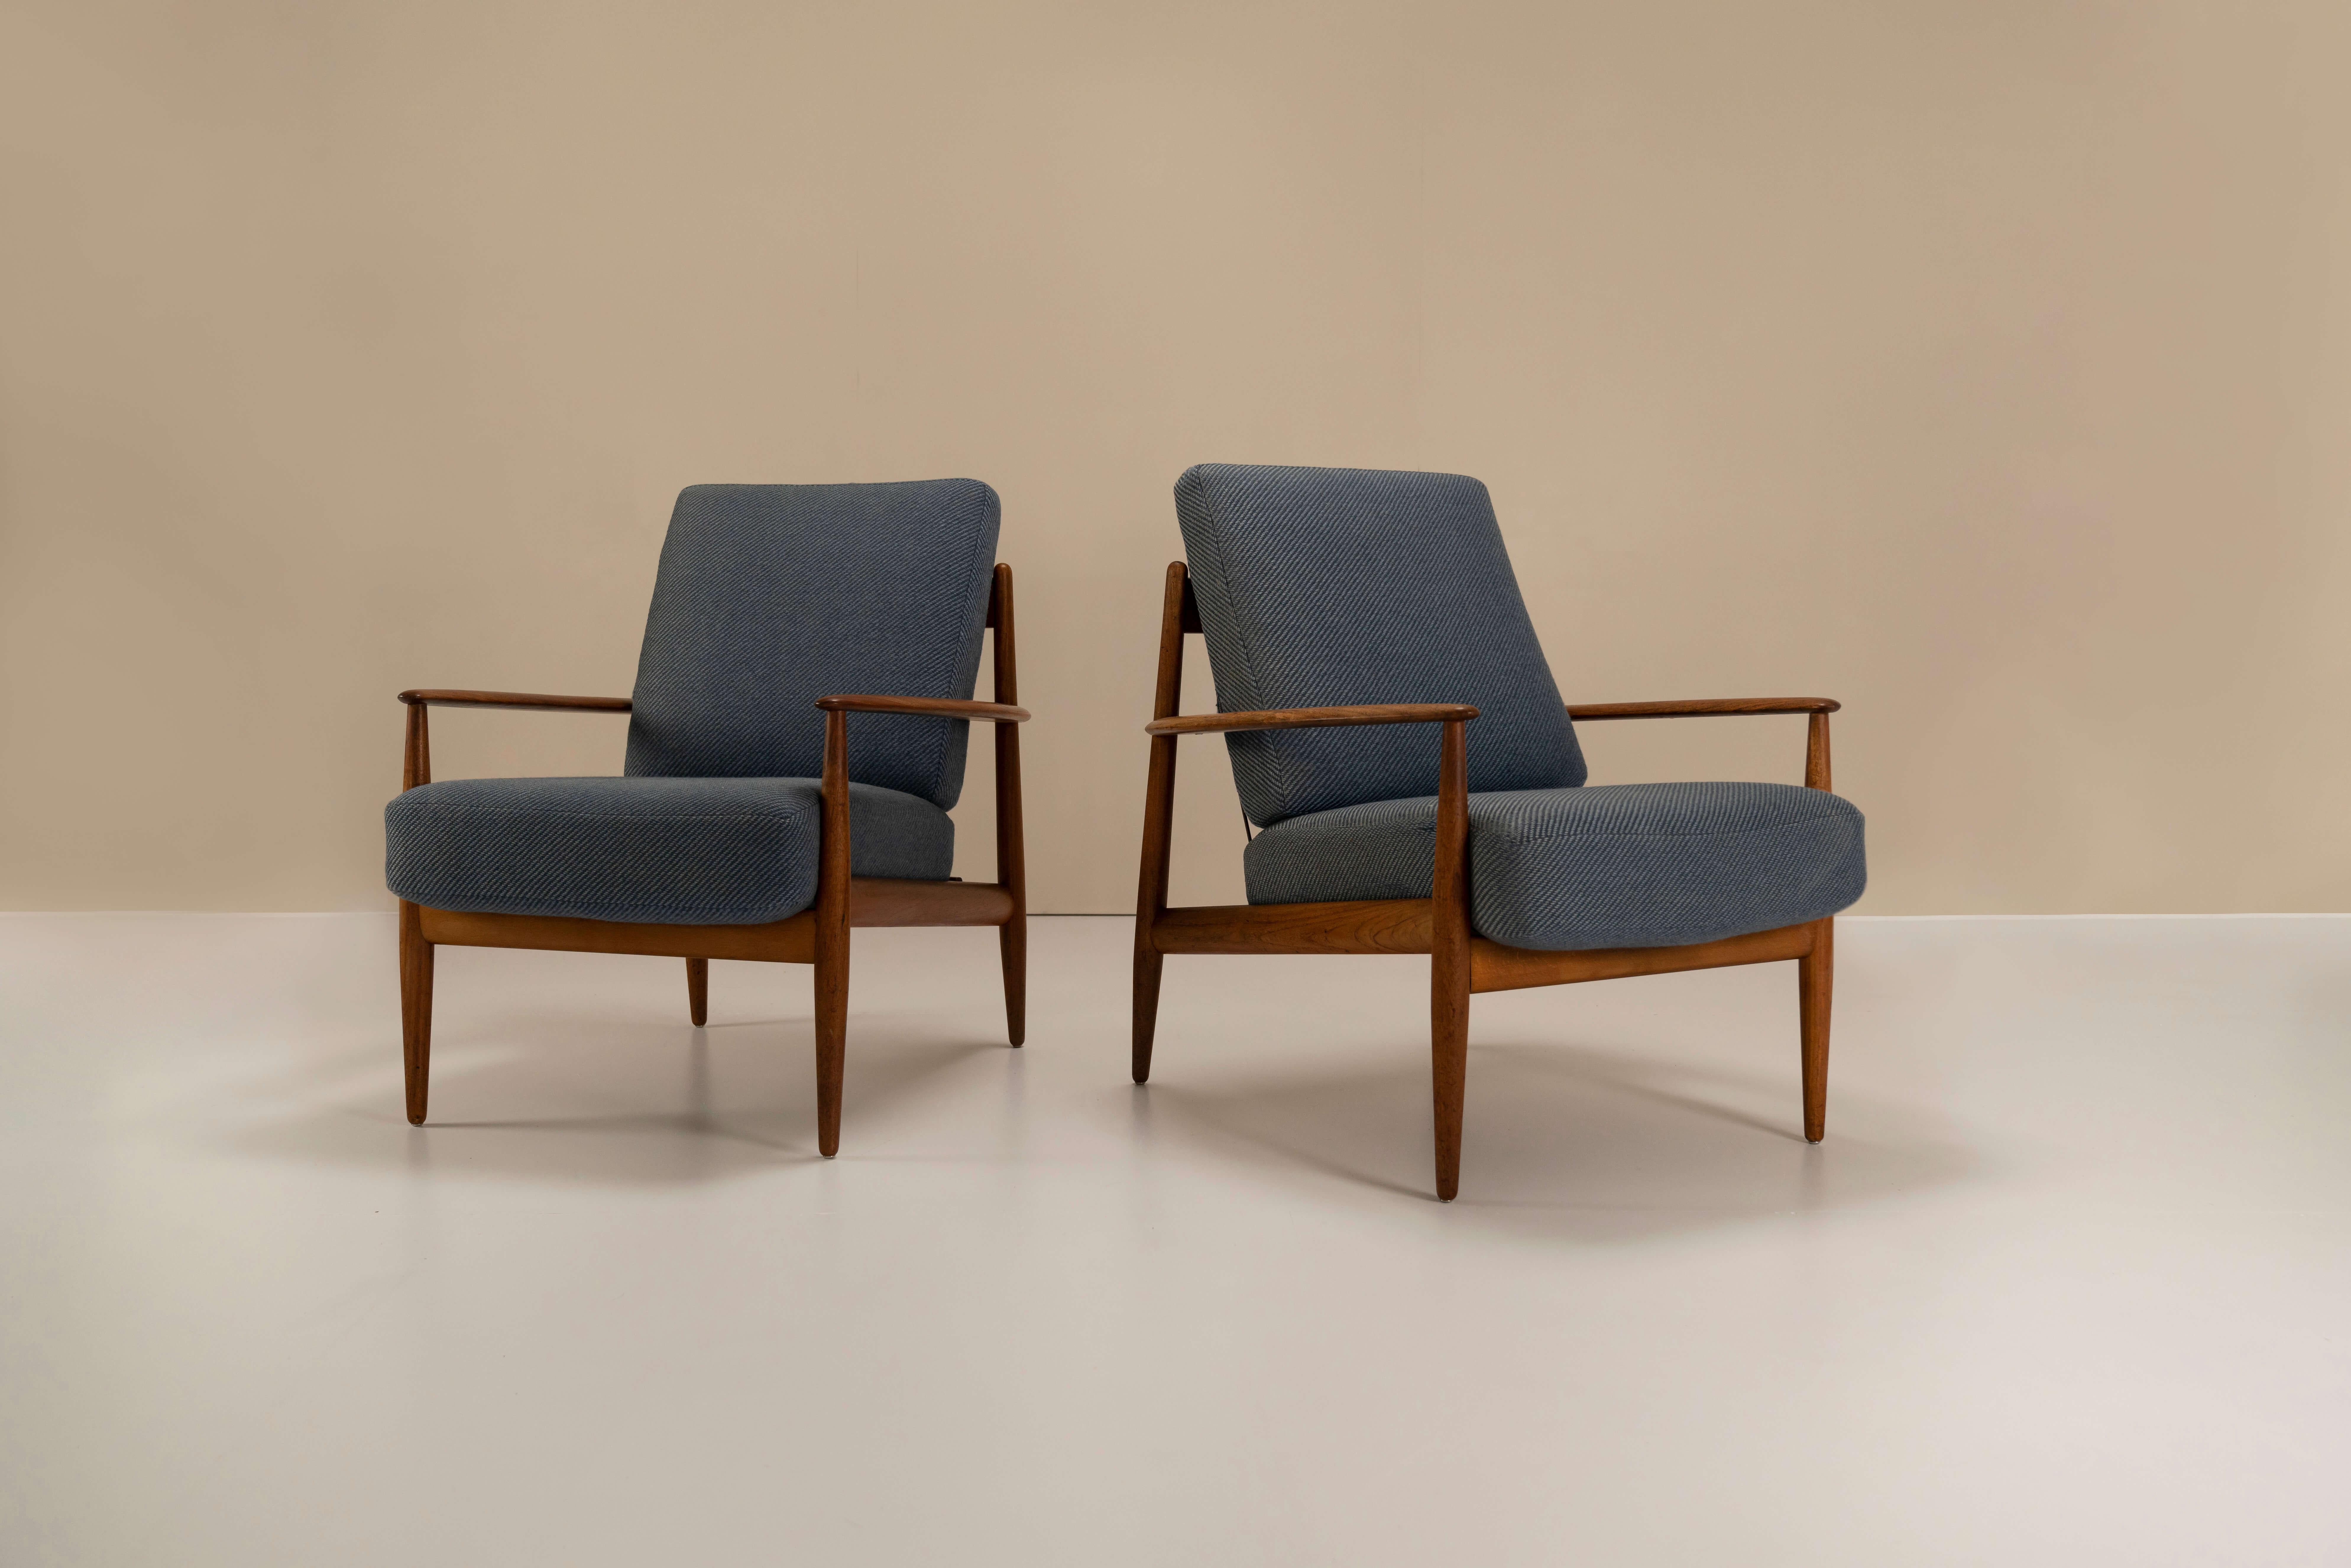 Charmante paire de fauteuils Grete Jalk Model 118 en teck et tissu pour France & Daverkosen de 1955. Ces deux chaises confortables sont les premières de la série modèle 118 conçue par Grete Jalk et fabriquée en 1955. Les cadres de ces exemples